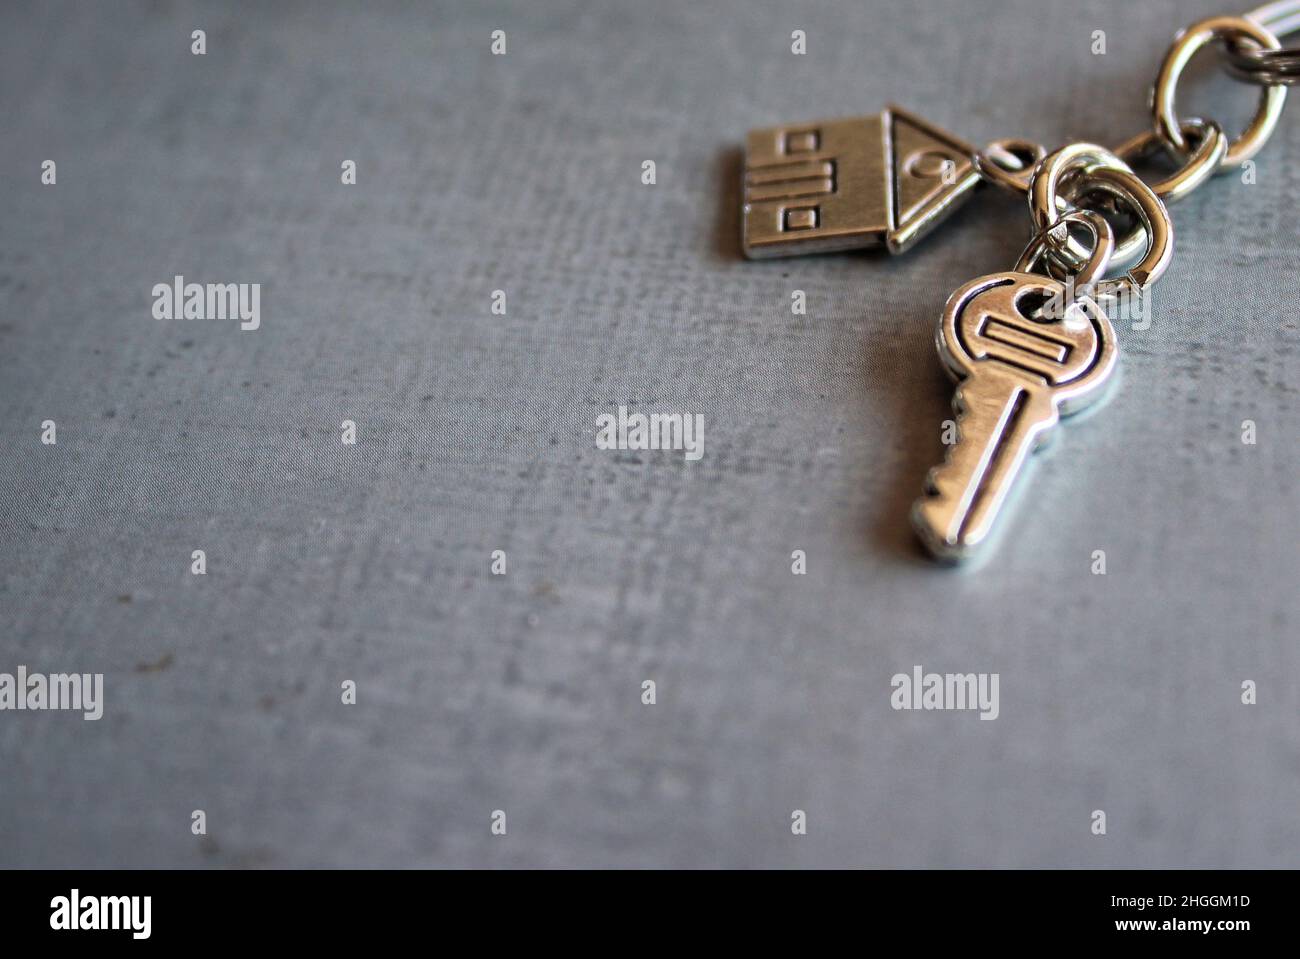 Imagen de enfoque selectivo de la llave de la casa en piso de concreto con espacio de copia para texto. Concepto de propiedad de la casa. Foto de stock